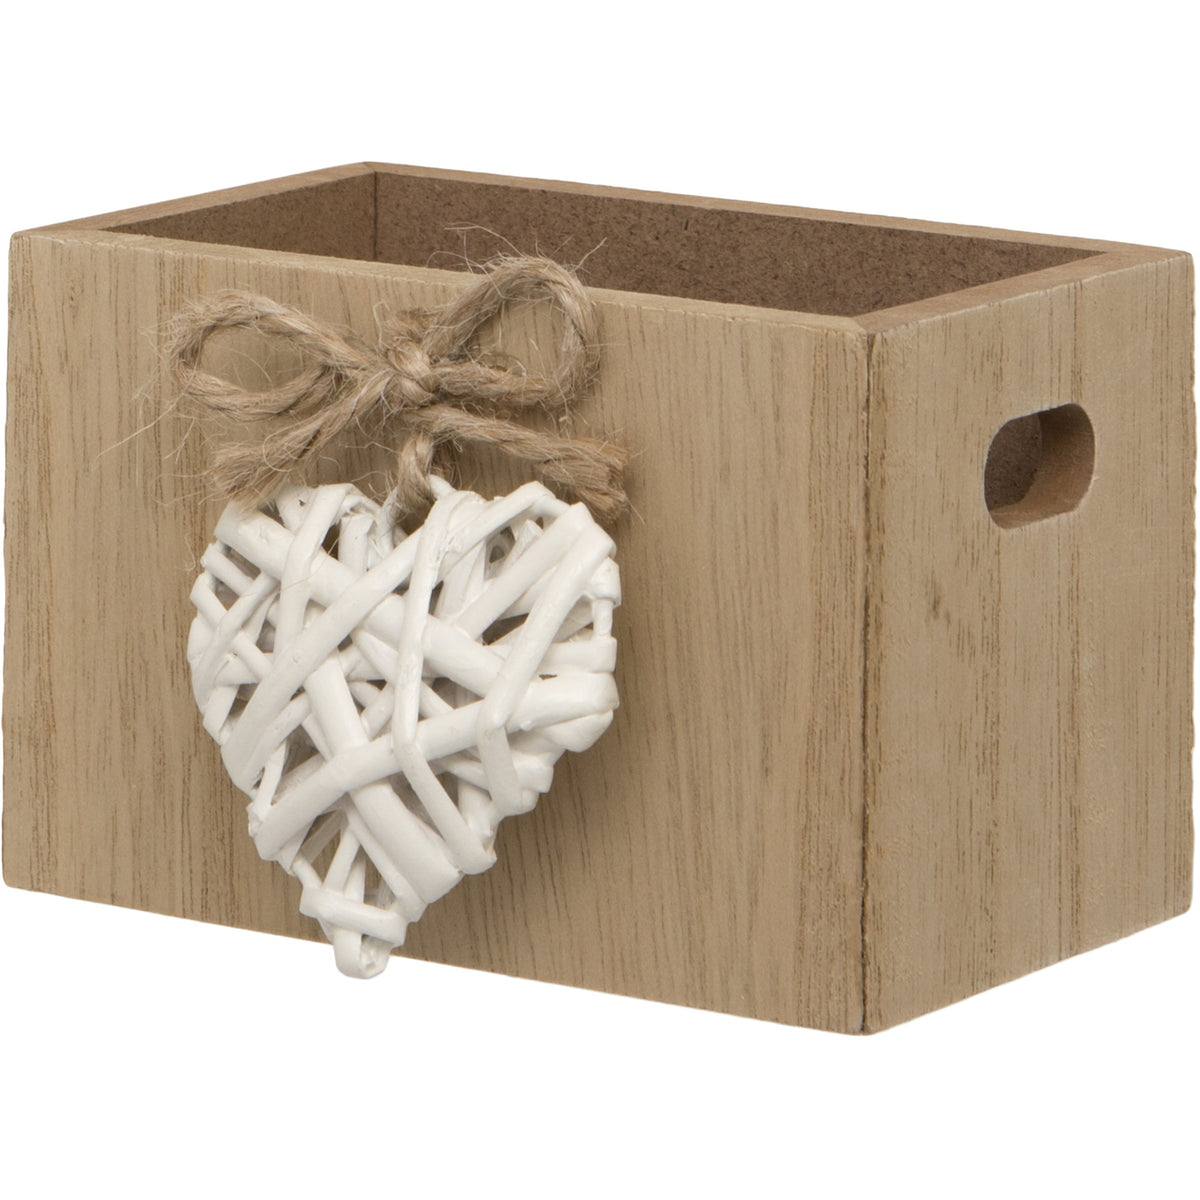 Woven Heart Wooden Trinket Box